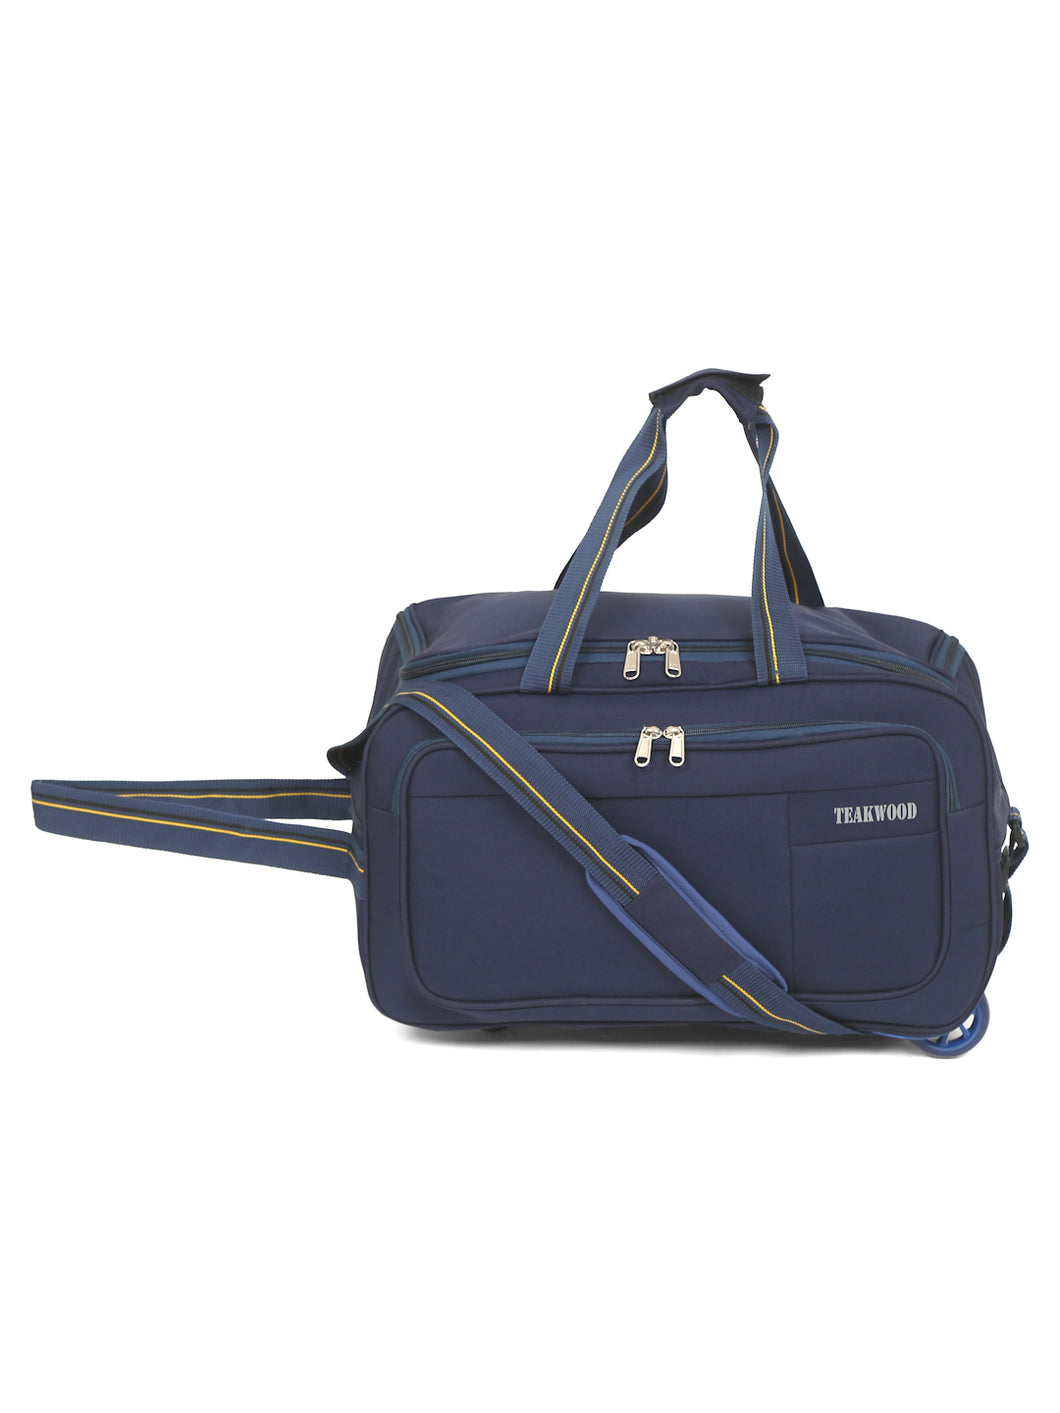 Teakwood Rolling Small Duffel Bag (Blue)